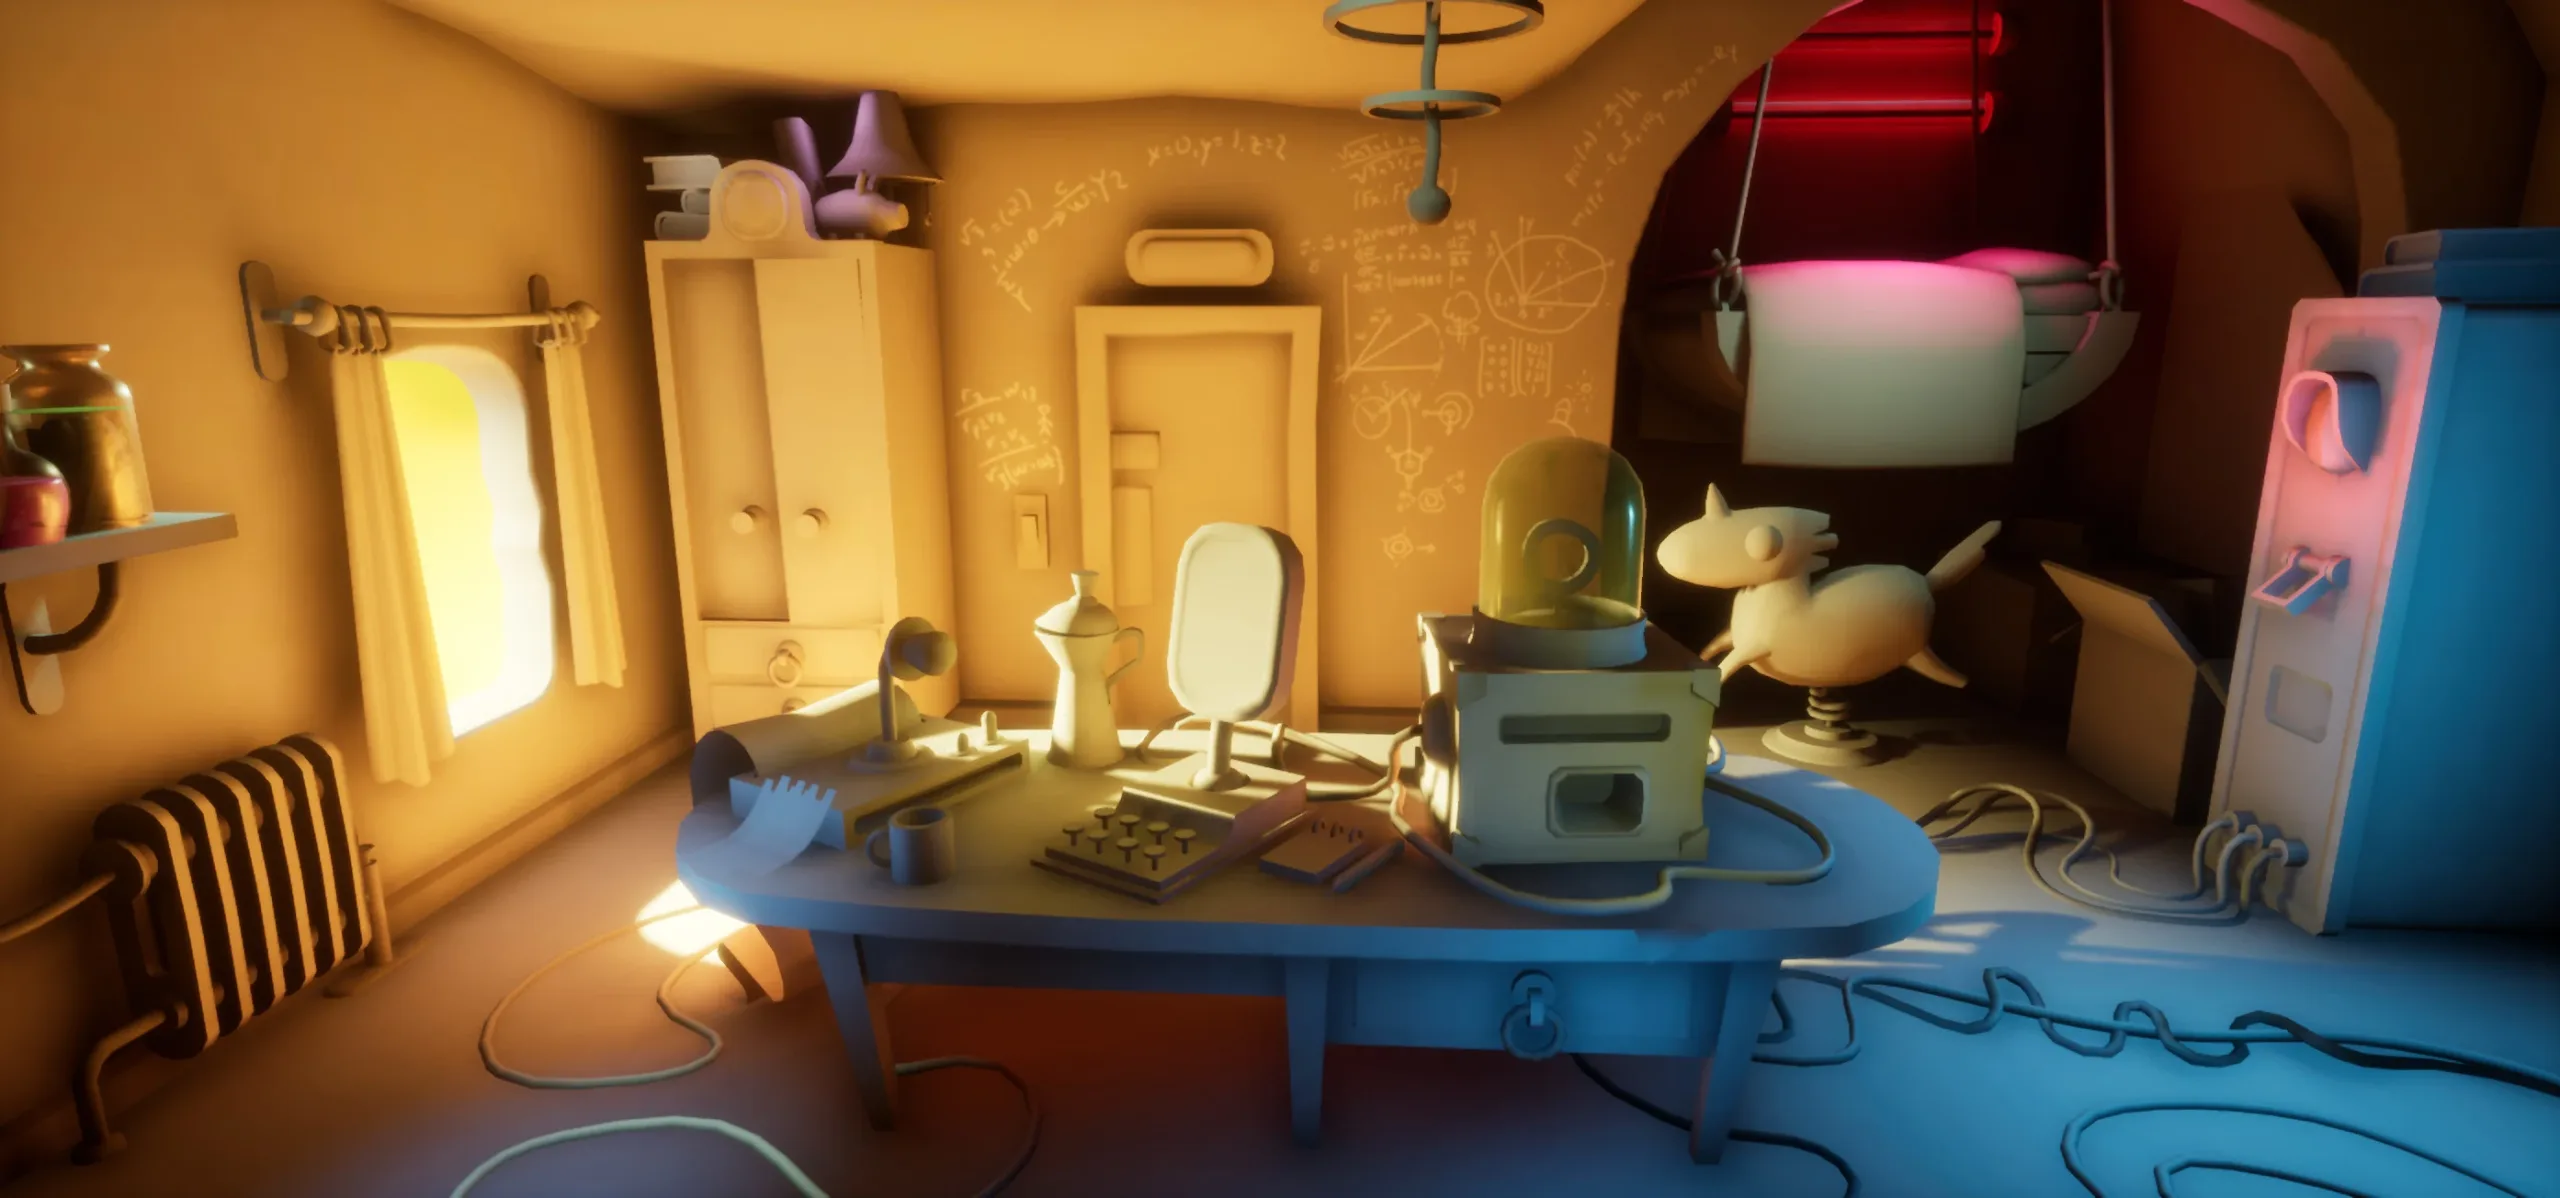 Unreal Engine Interior Scene Project - Plus Videos